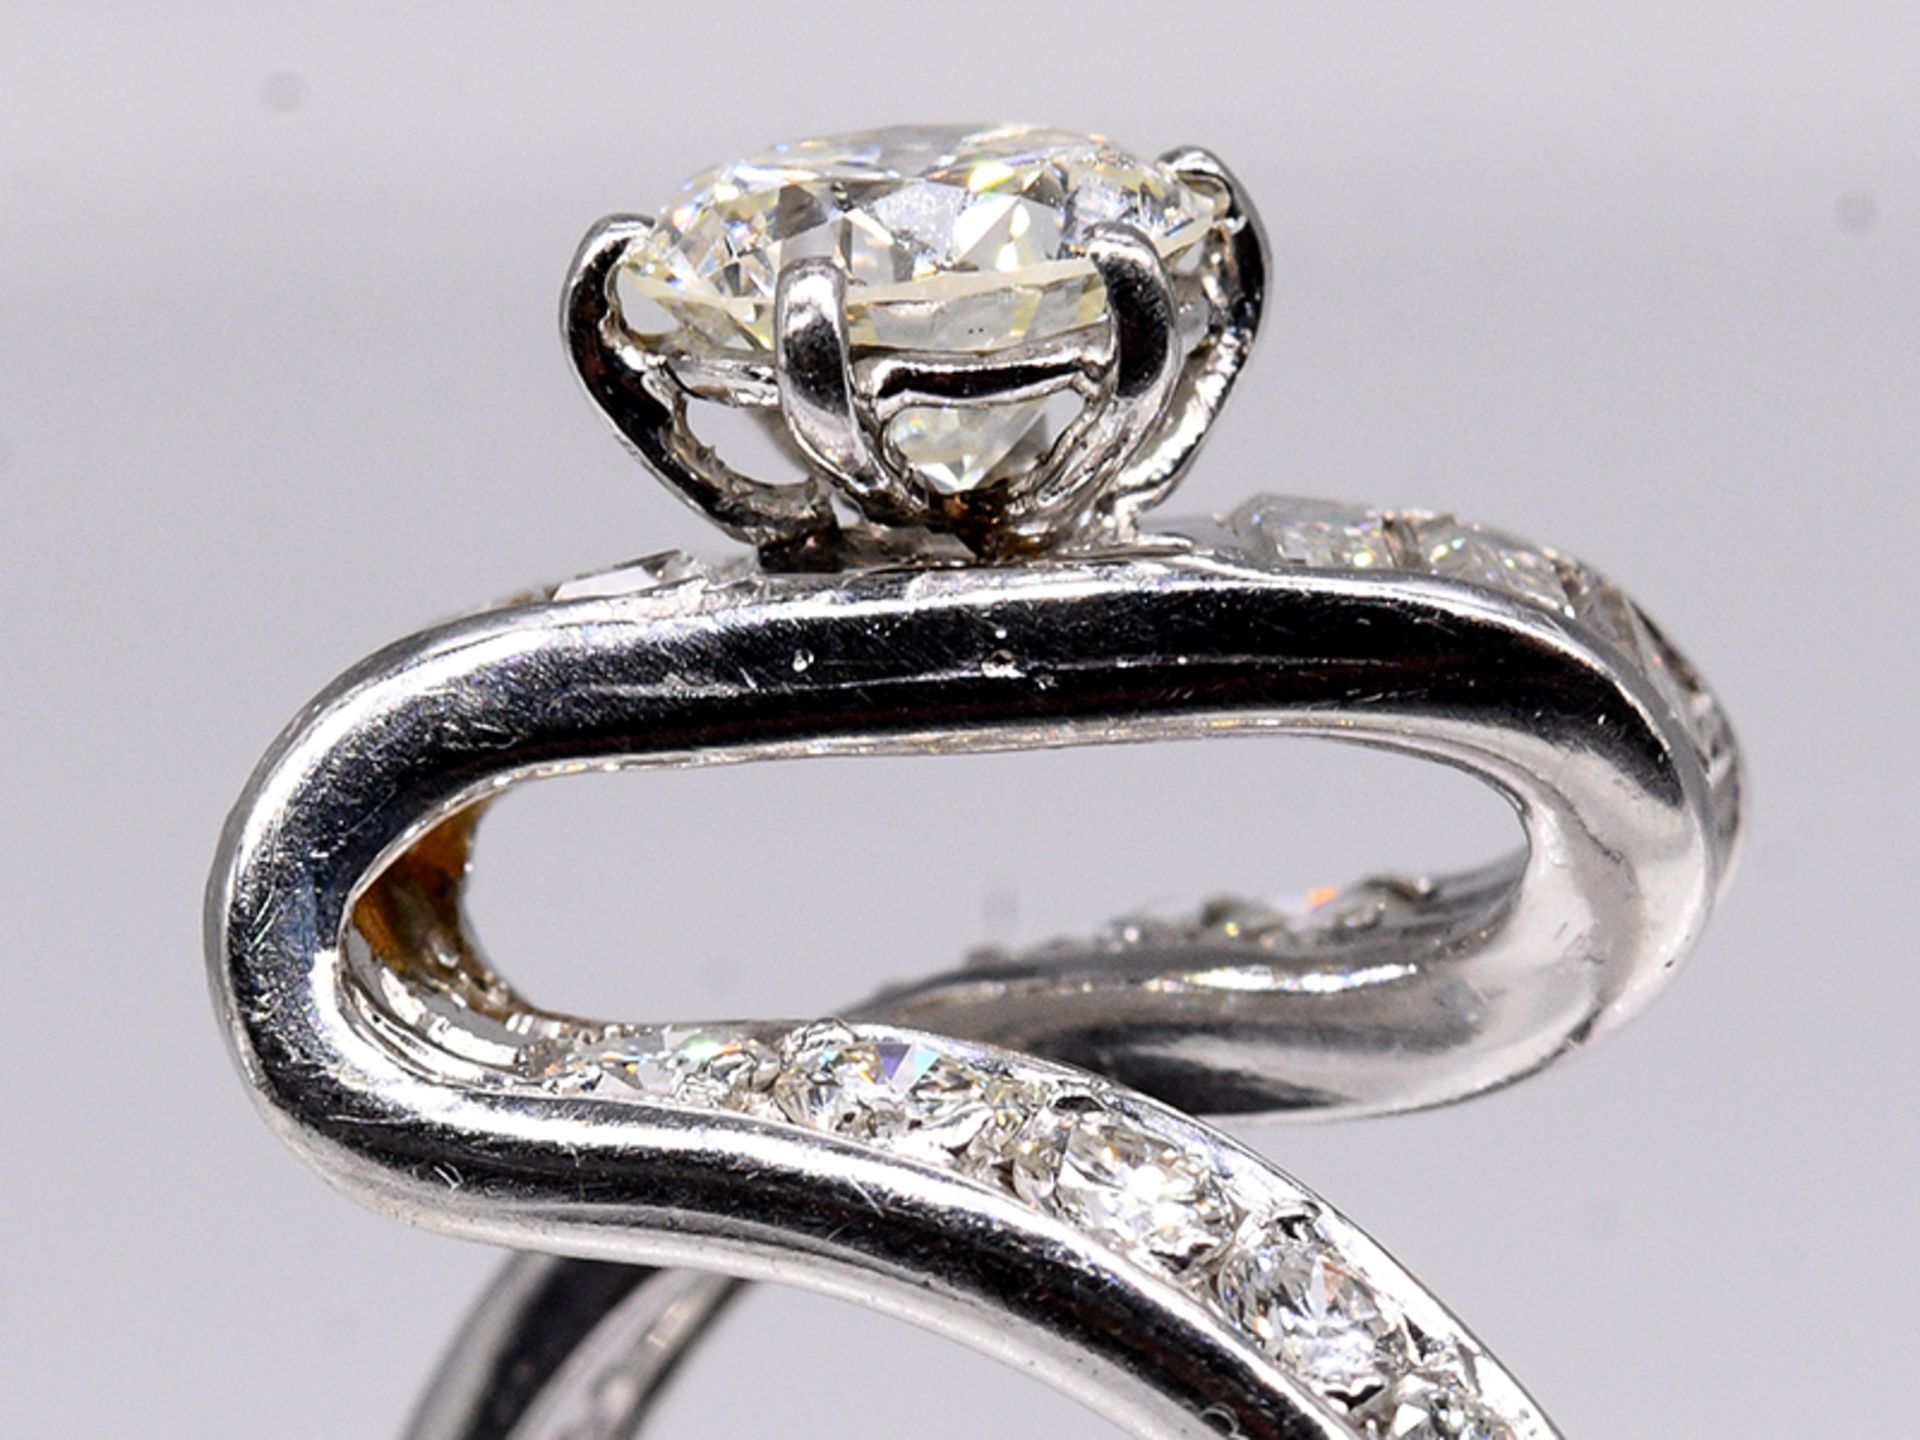 Platin-Ring mit Brillant und Diamanten, zus. ca. 1,85 ct, Juwelier Stern, Rio de Janeiro von 1970. - Bild 5 aus 7